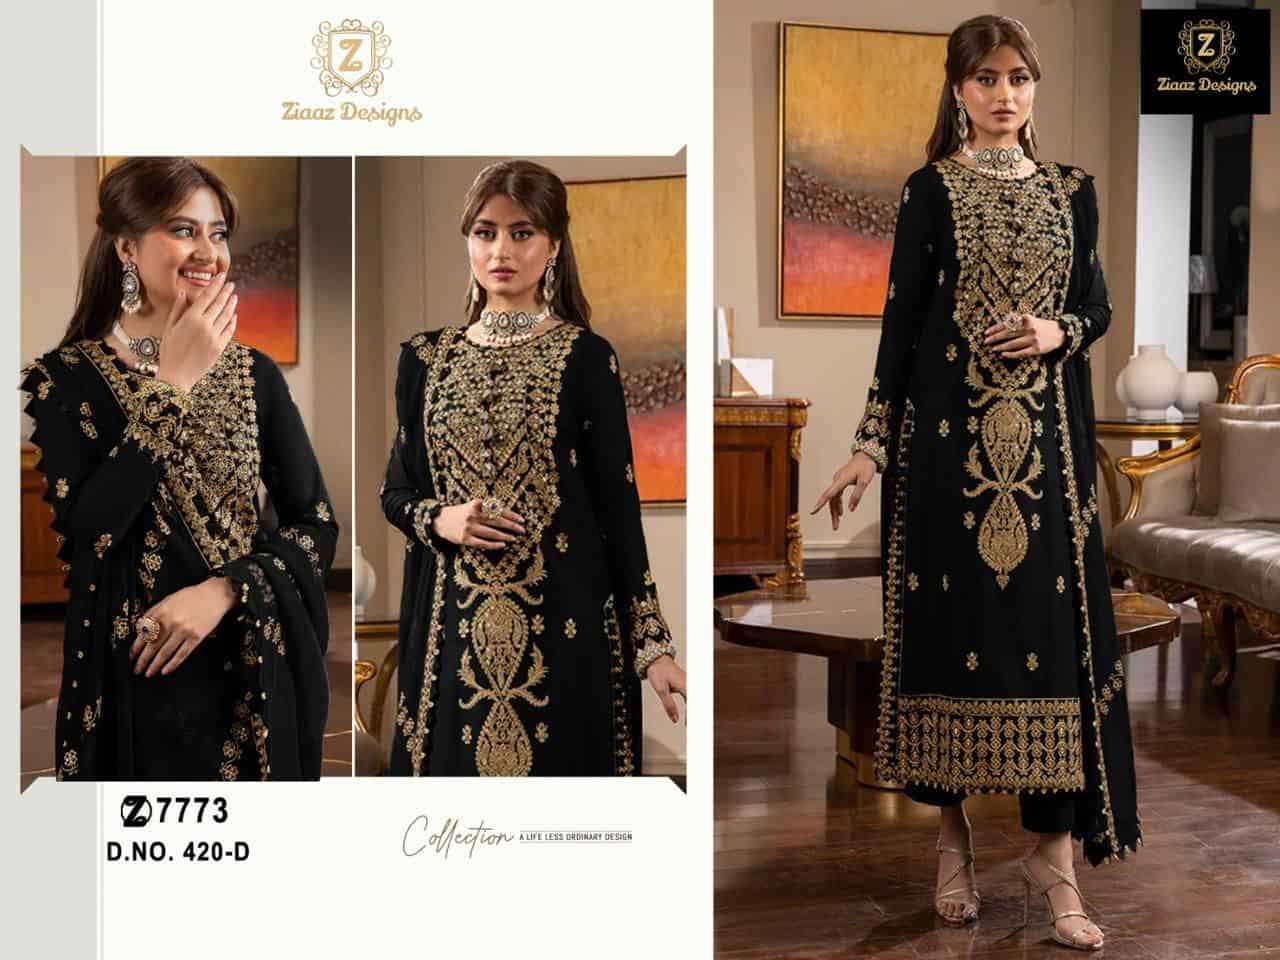 Ziaaz Designs 420 D Exclusive Party Wear Style Heavy Designer salwar Kameez Collection